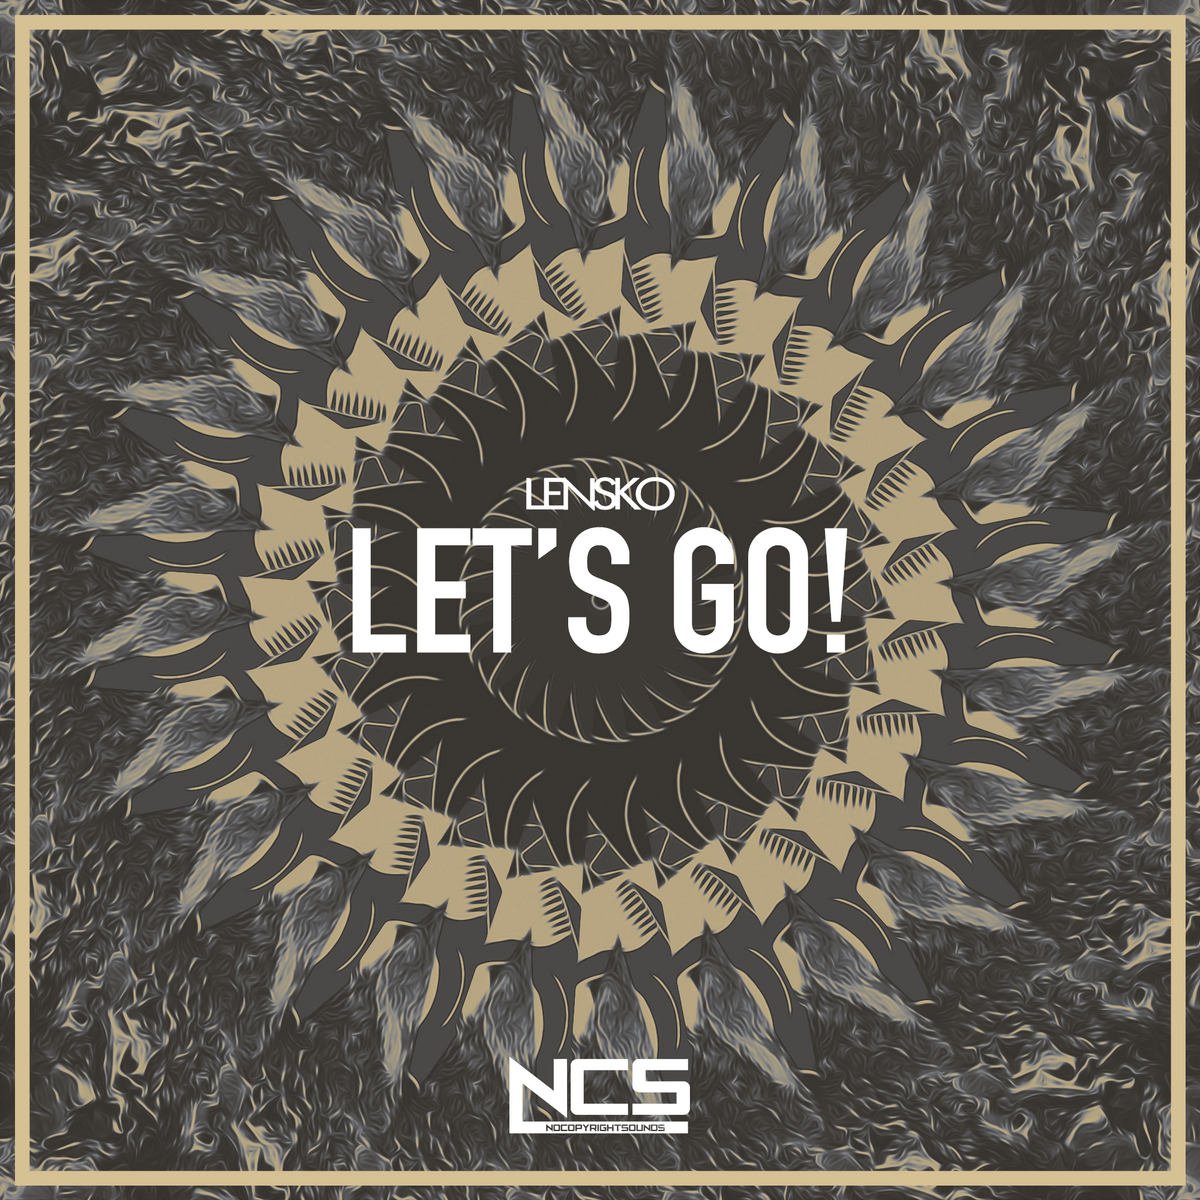 Лет гоу слушать. Lensko Let's go. Lensko - Let's go! [NCS release]. NCS обложки. Let/s go ремикс.